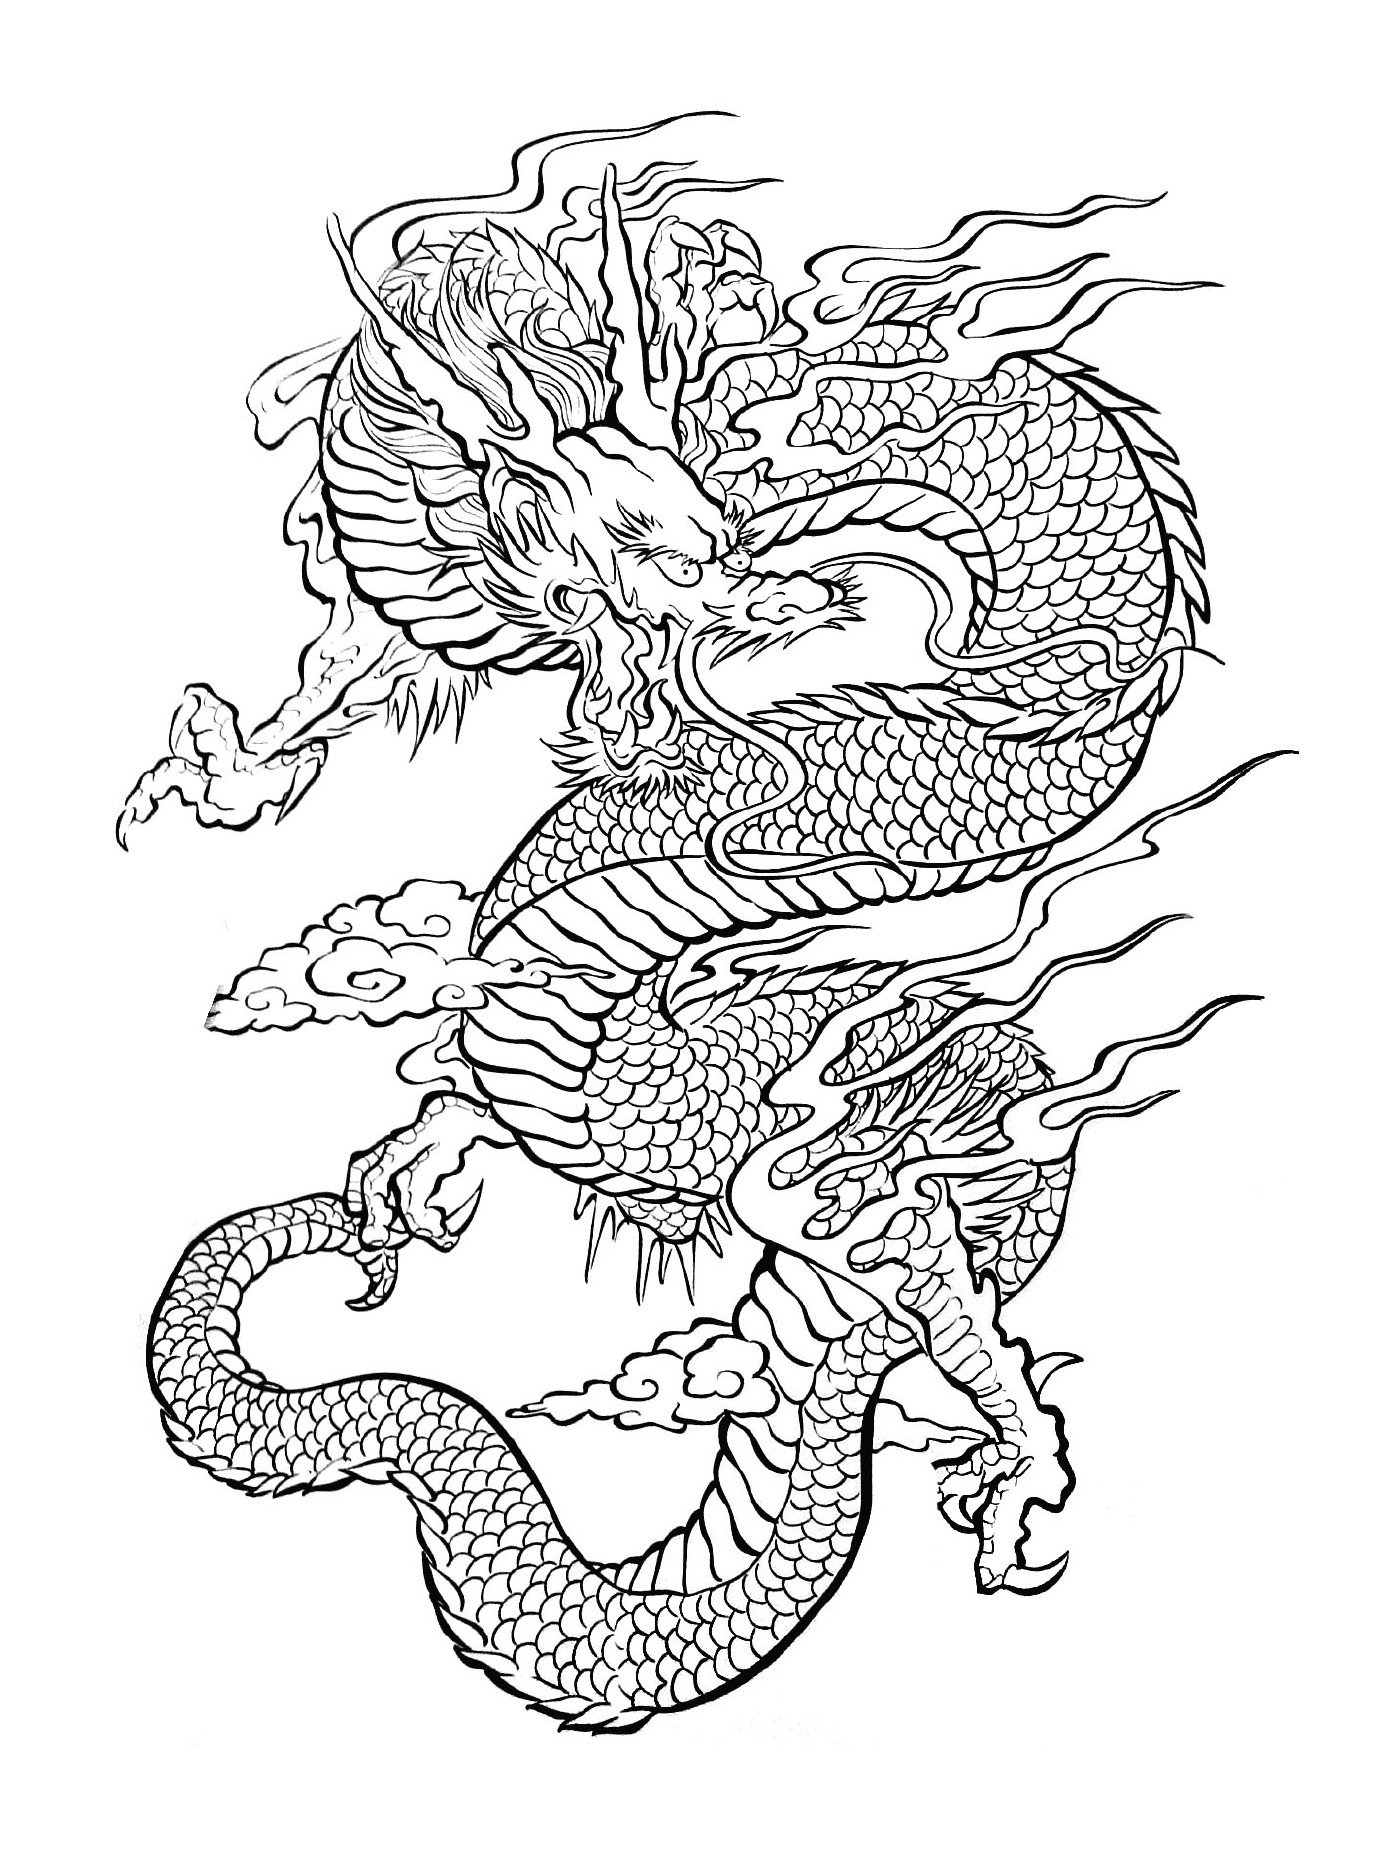  Un'illustrazione di un drago orientale che vola in aria 